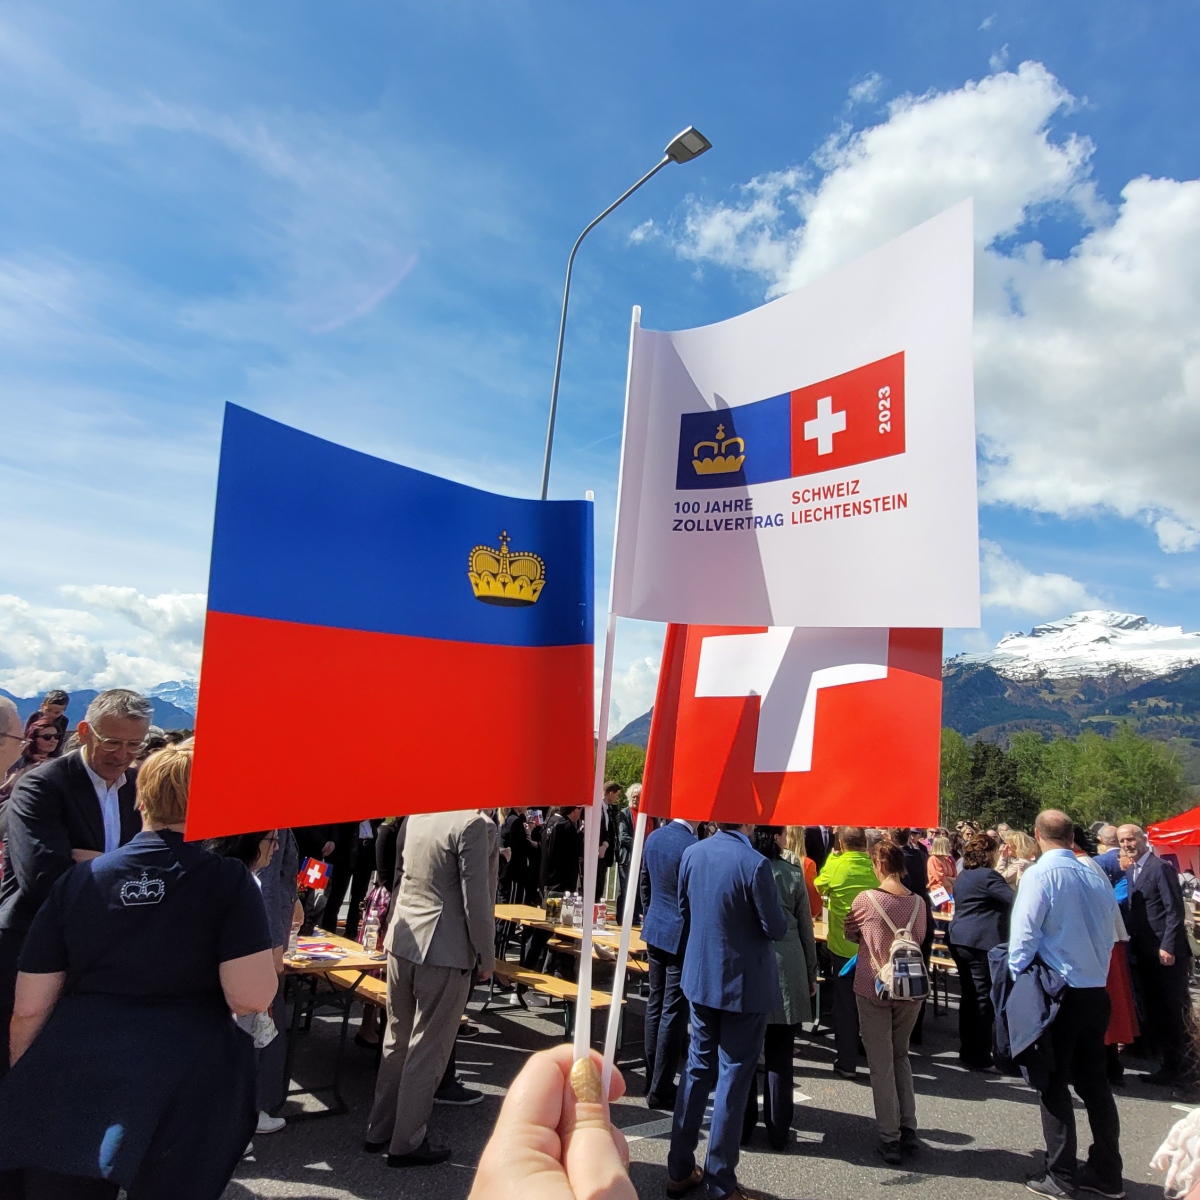 Jubilee in Liechtenstein